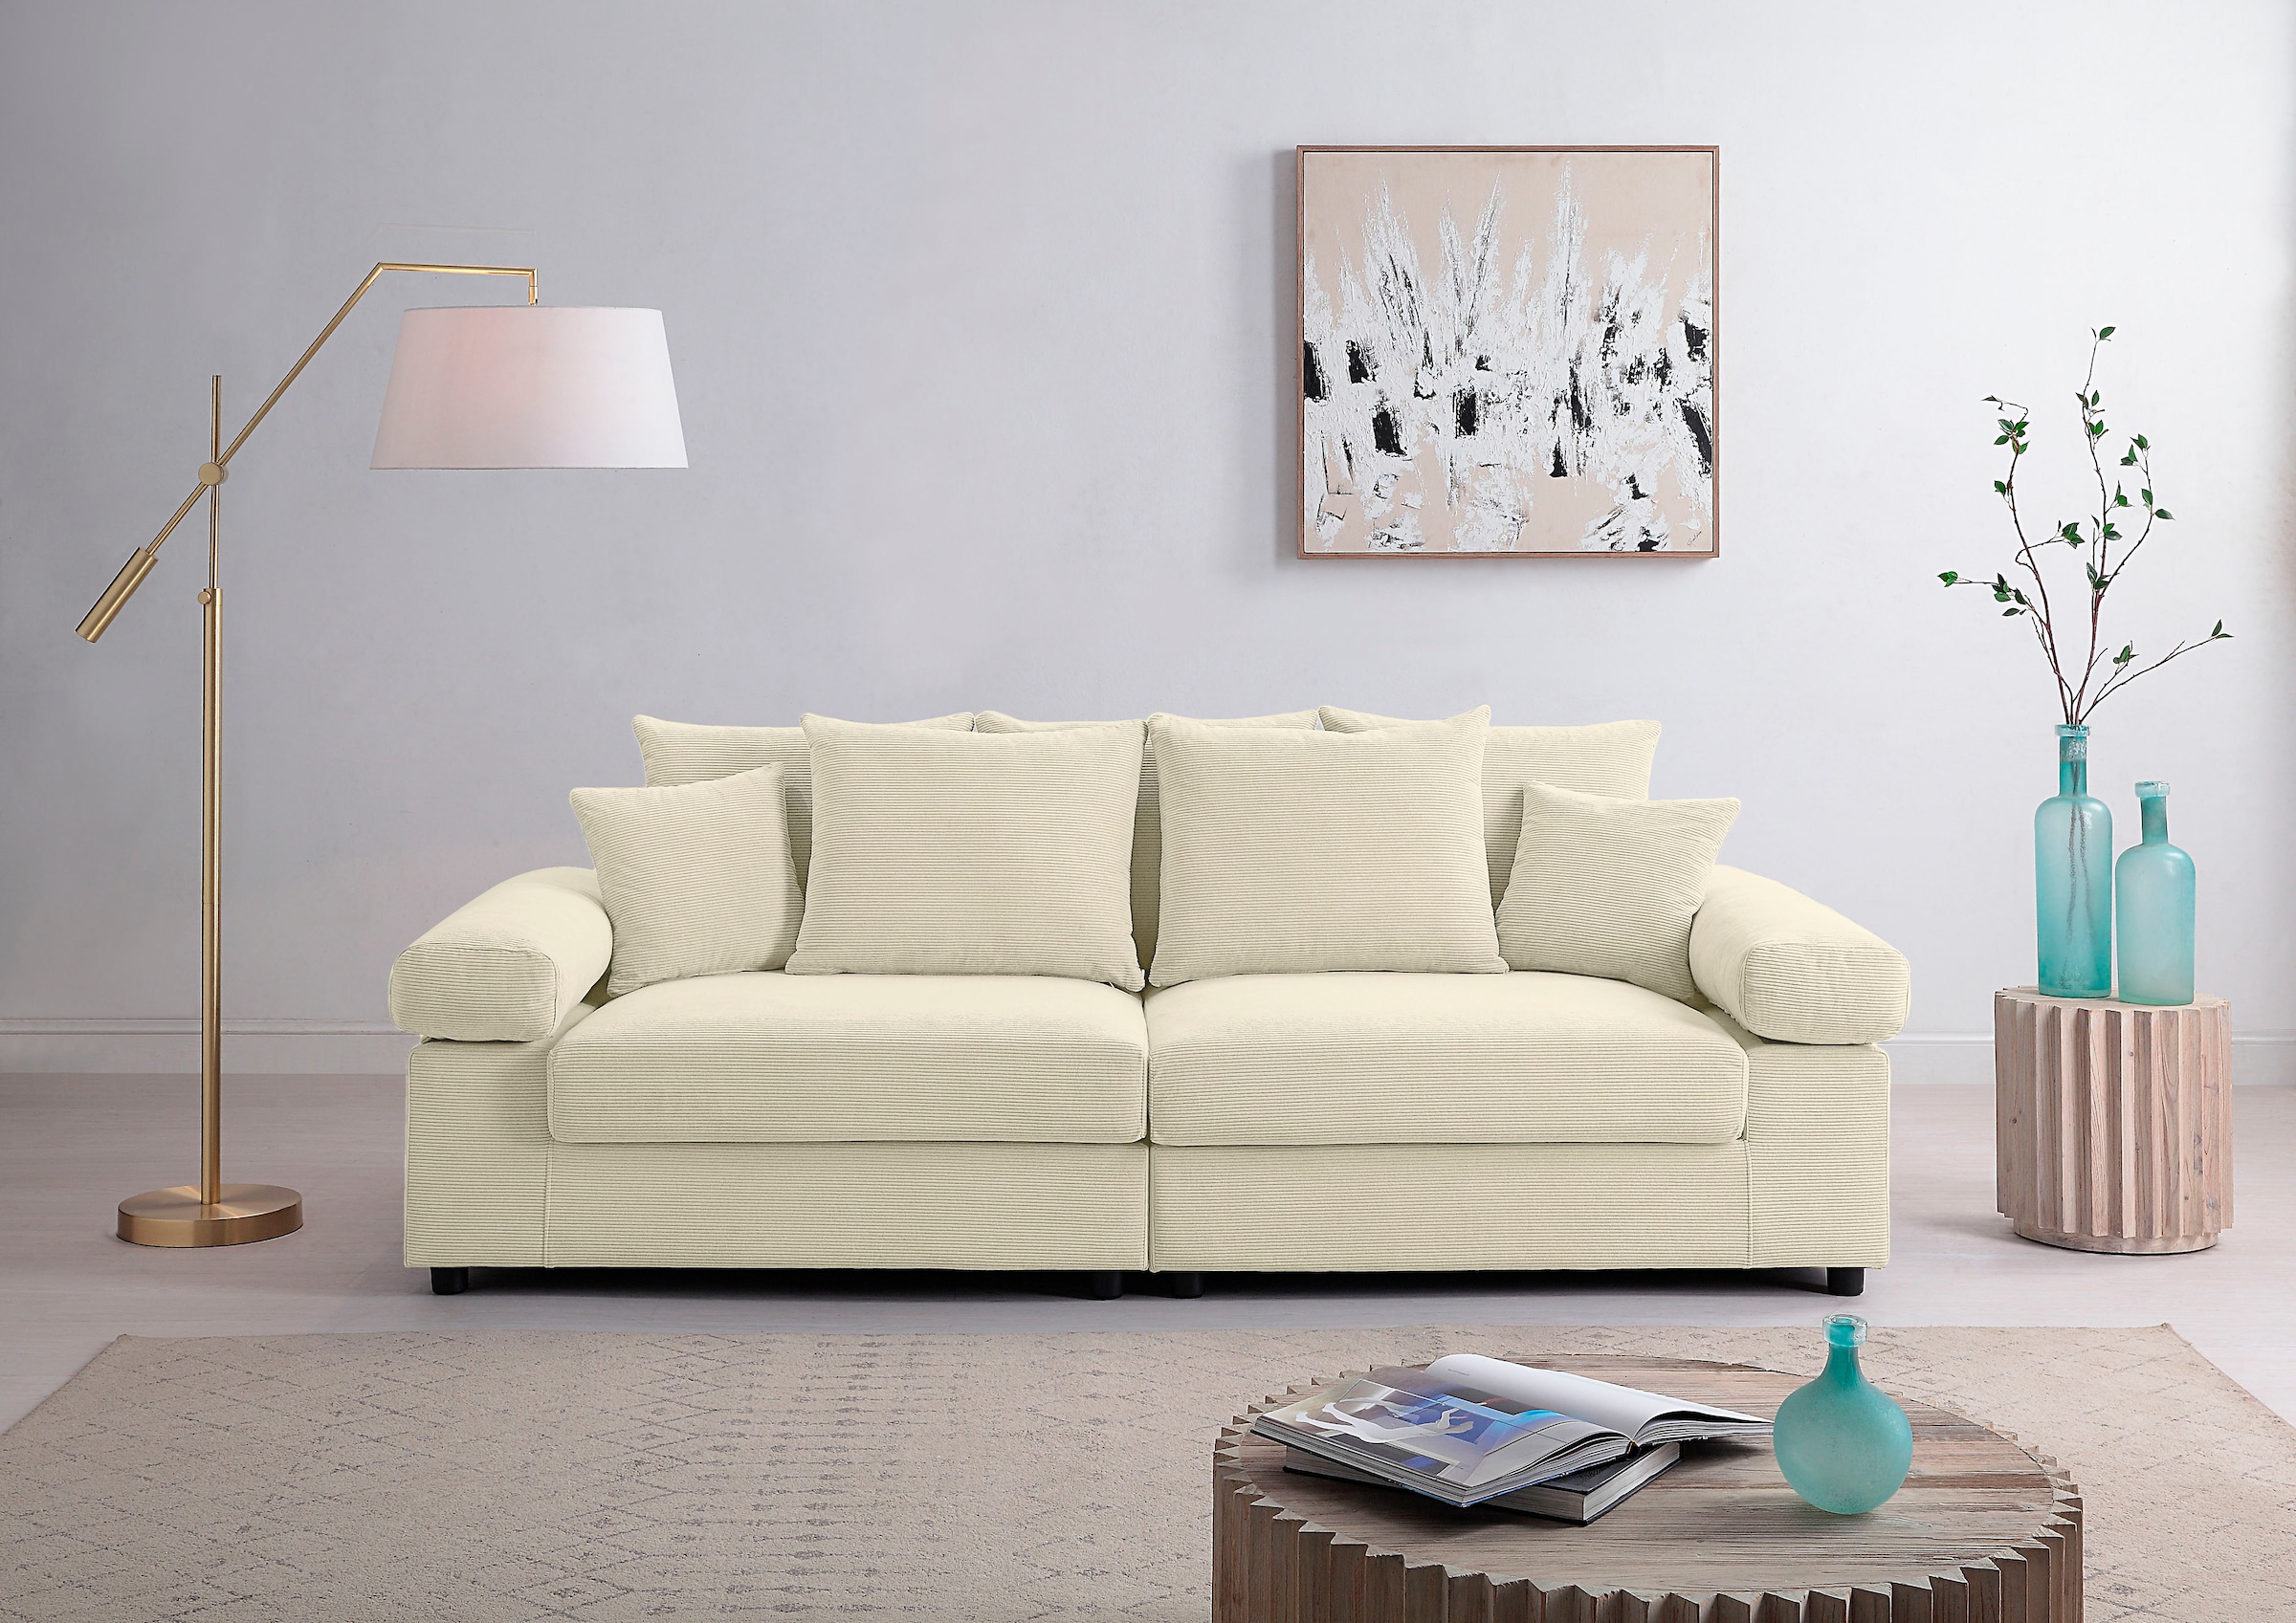 ATLANTIC home collection Big-Sofa »Bjoern«, mit Cord-Bezug, XXL-Sitzfläche, mit Federkern, frei im Raum stellbar